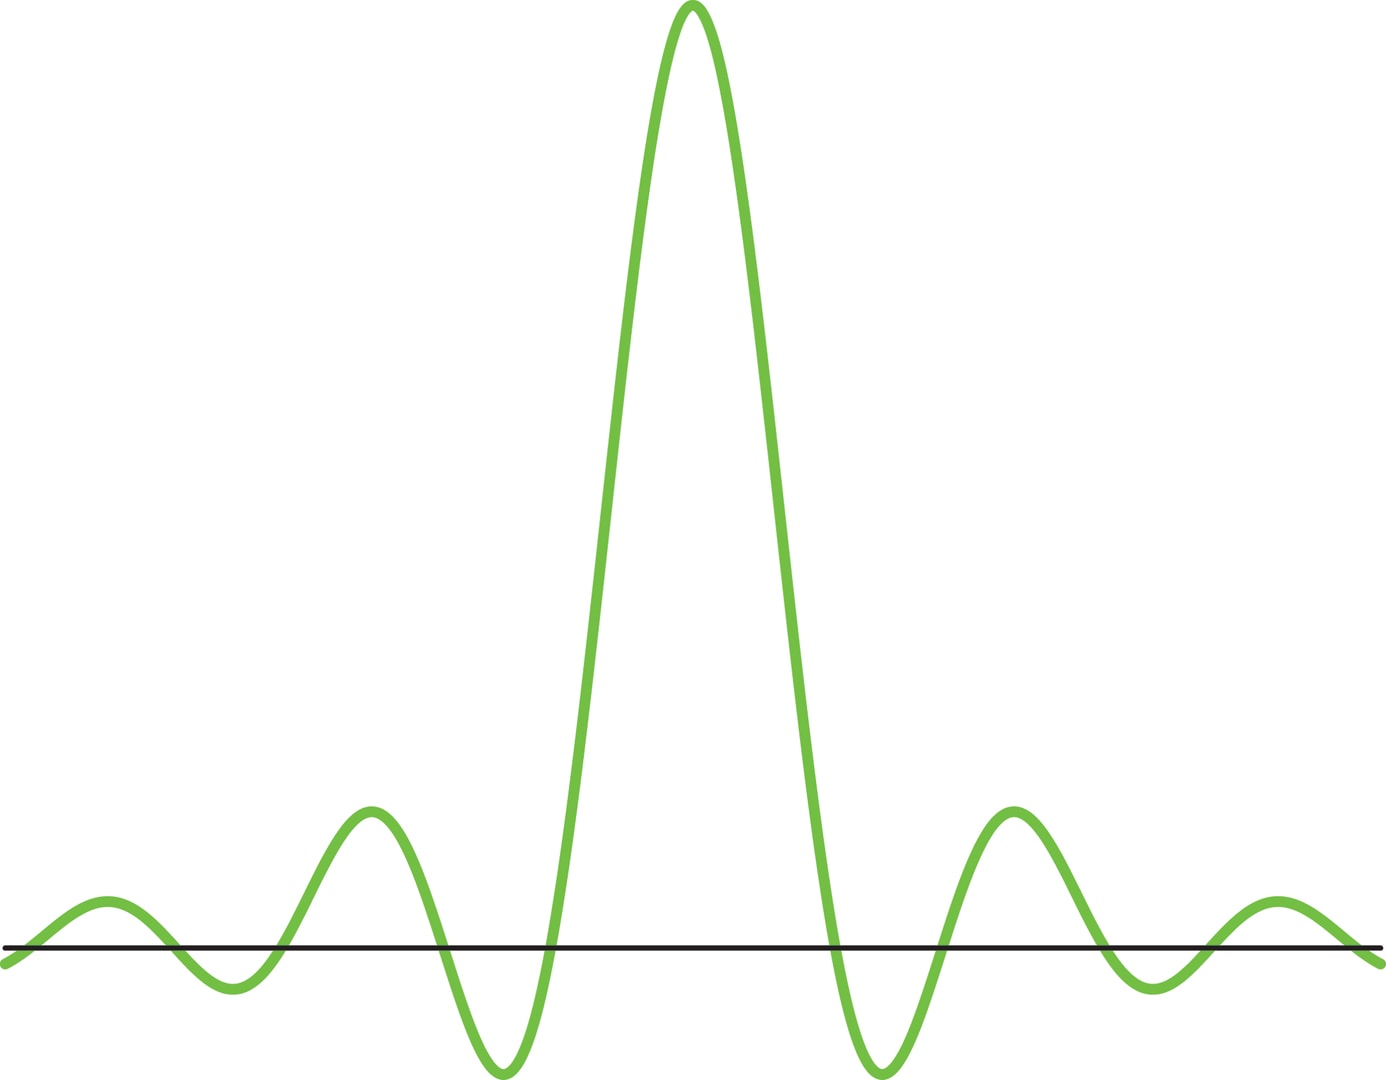 Обработка сигналов: от волн к всплескам // Математическая составляющая